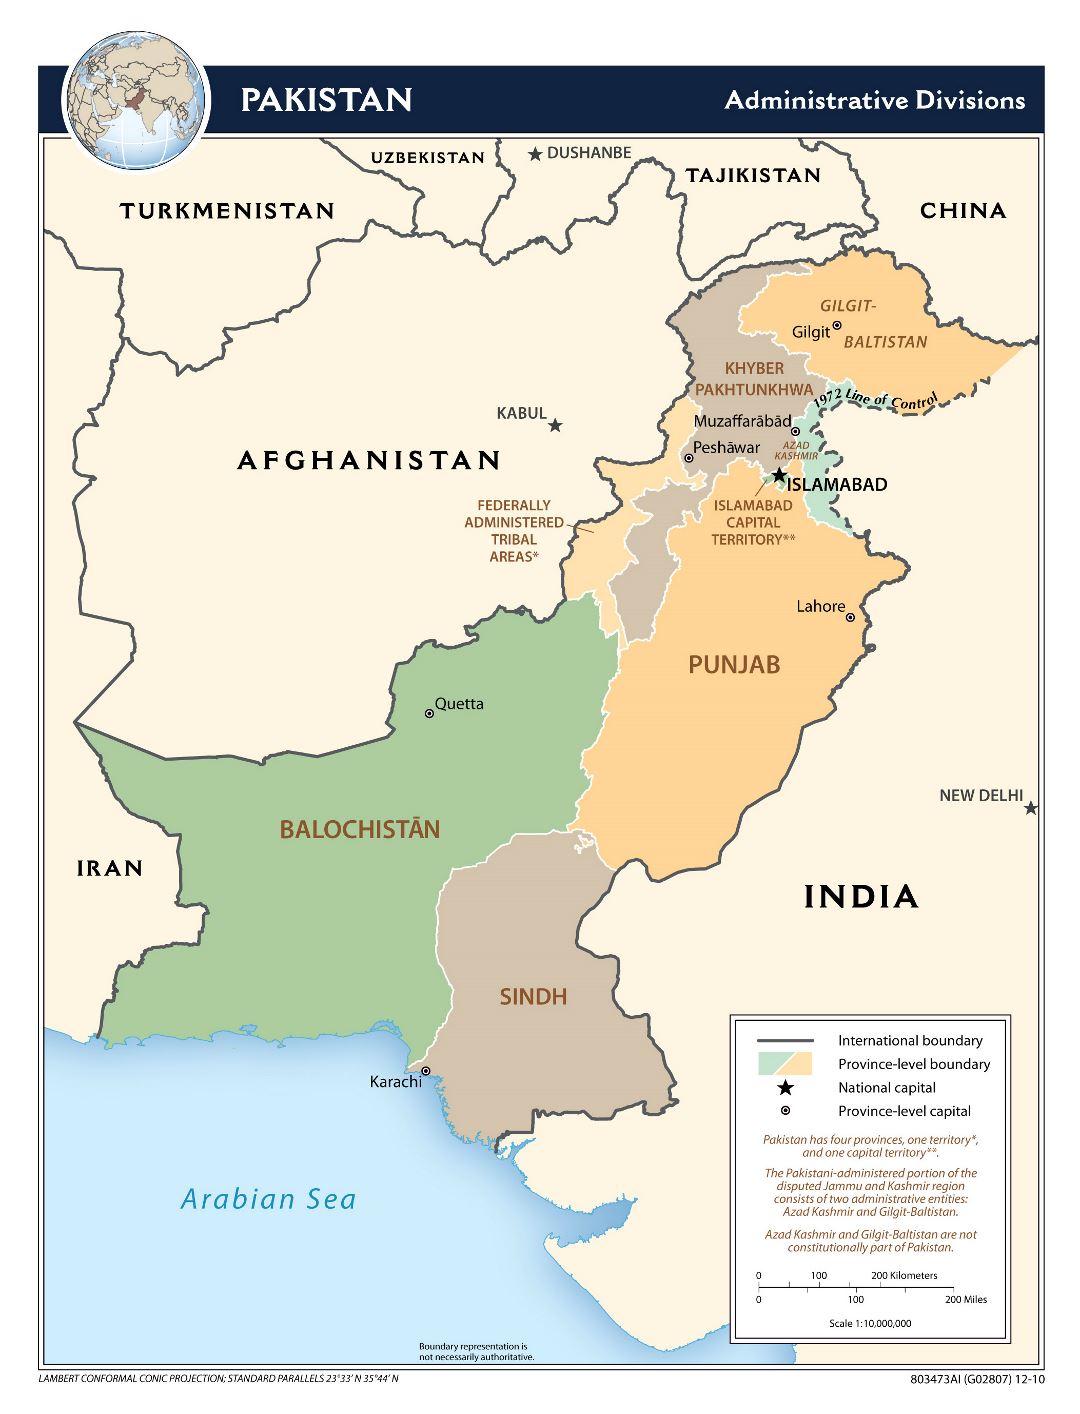 Grande mapa de administrativas divisiones de Pakistán - 2010